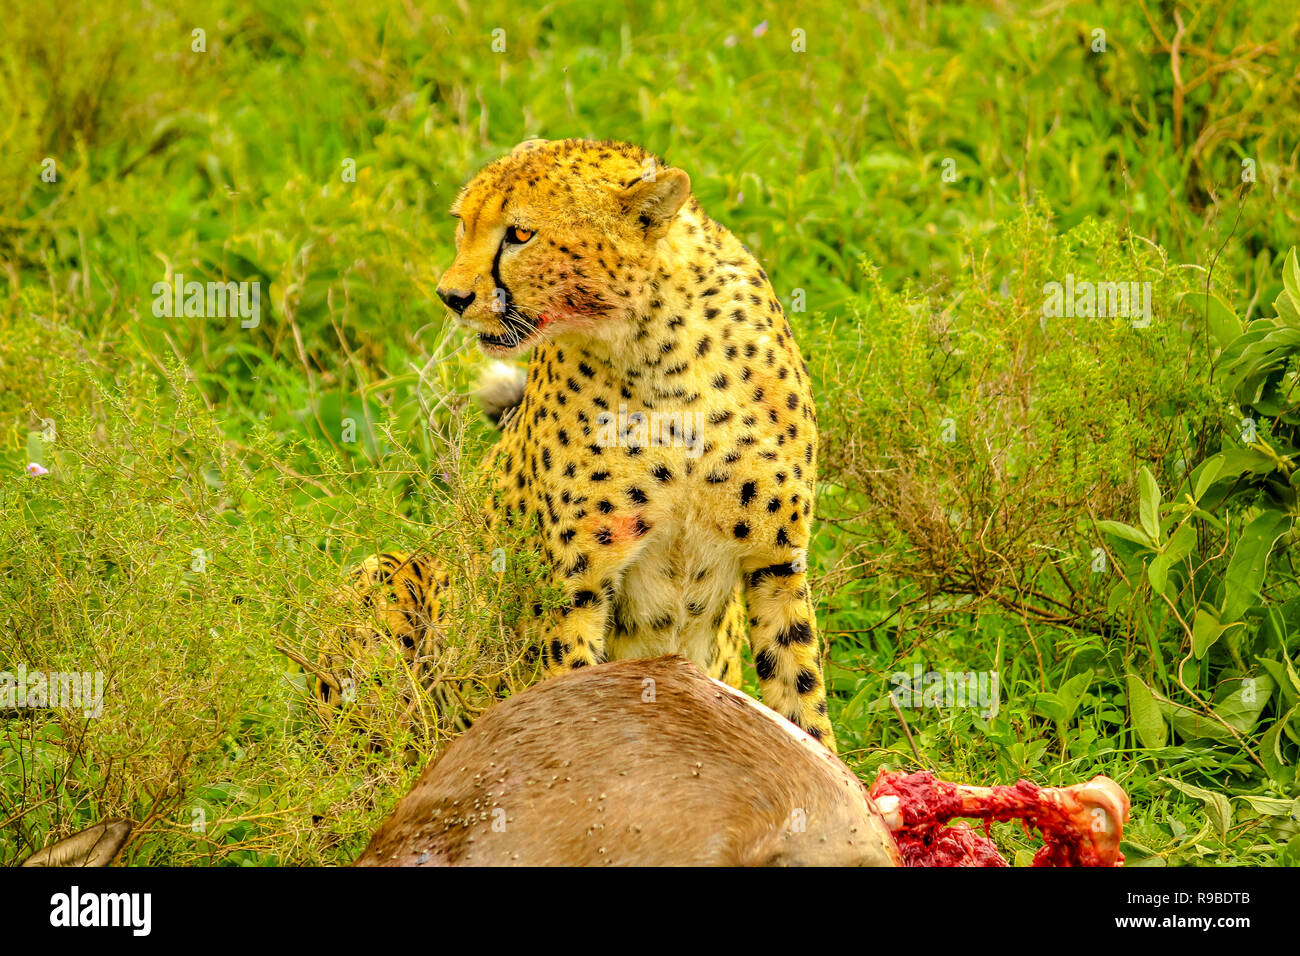 Cheetah männlich stehend mit blutigen Gesicht nach dem Essen an junge Gnu oder Gnus im grünen Gras Vegetation. Ndutu Bereich der Ngorongoro Conservation Area, Tansania, Afrika. Stockfoto